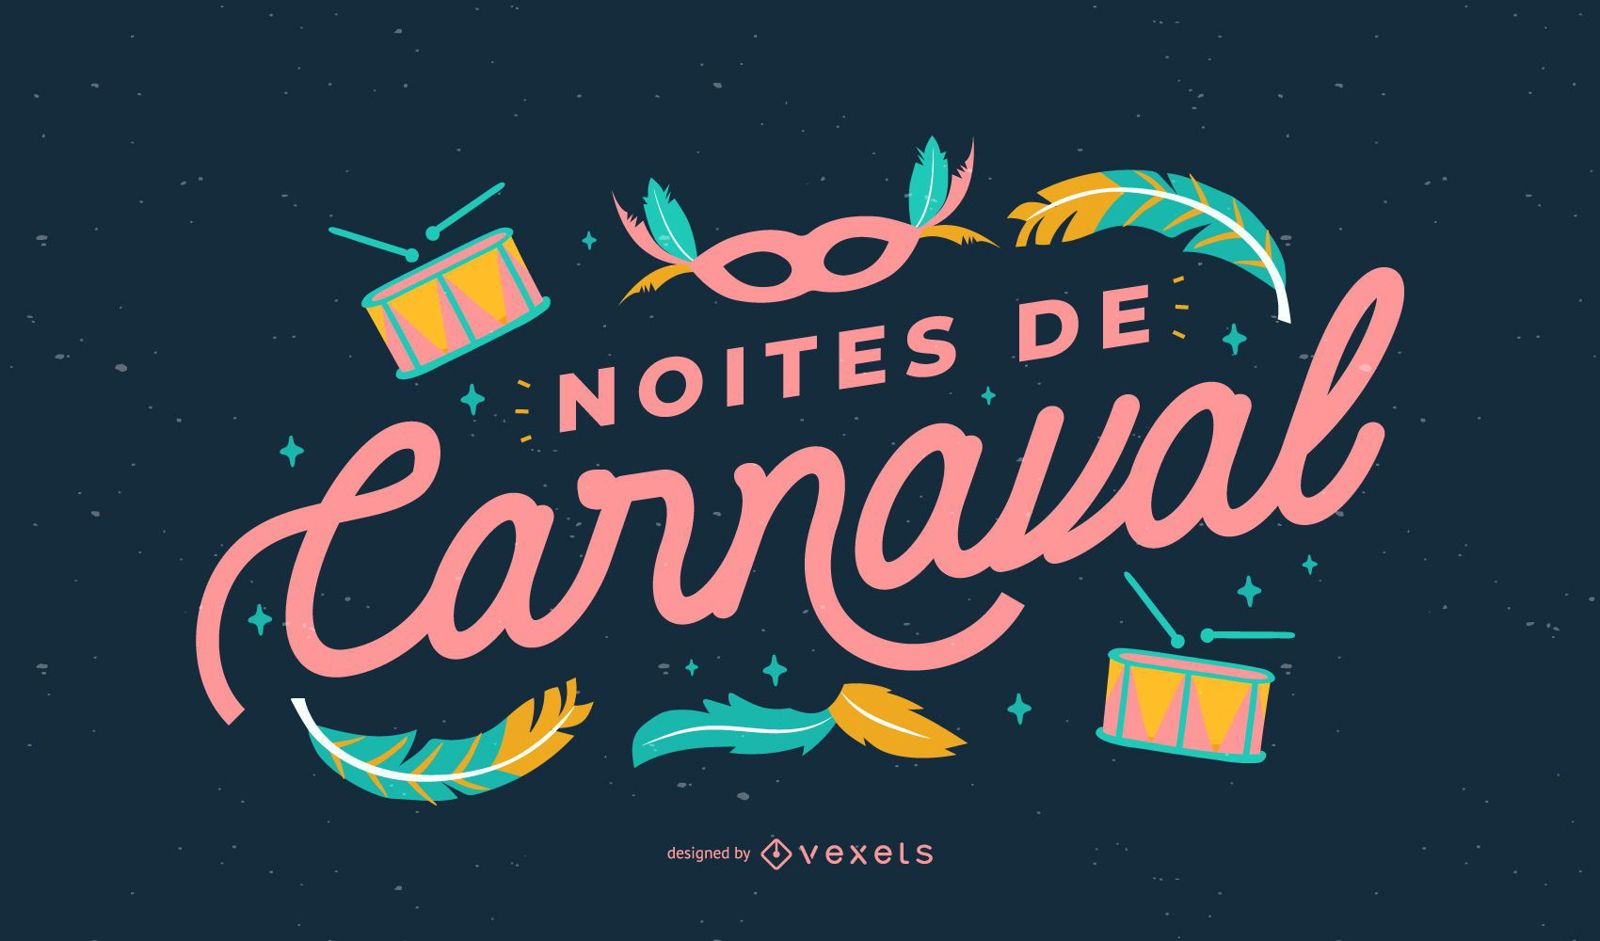 Carnival Nights Portuguese Quote Design